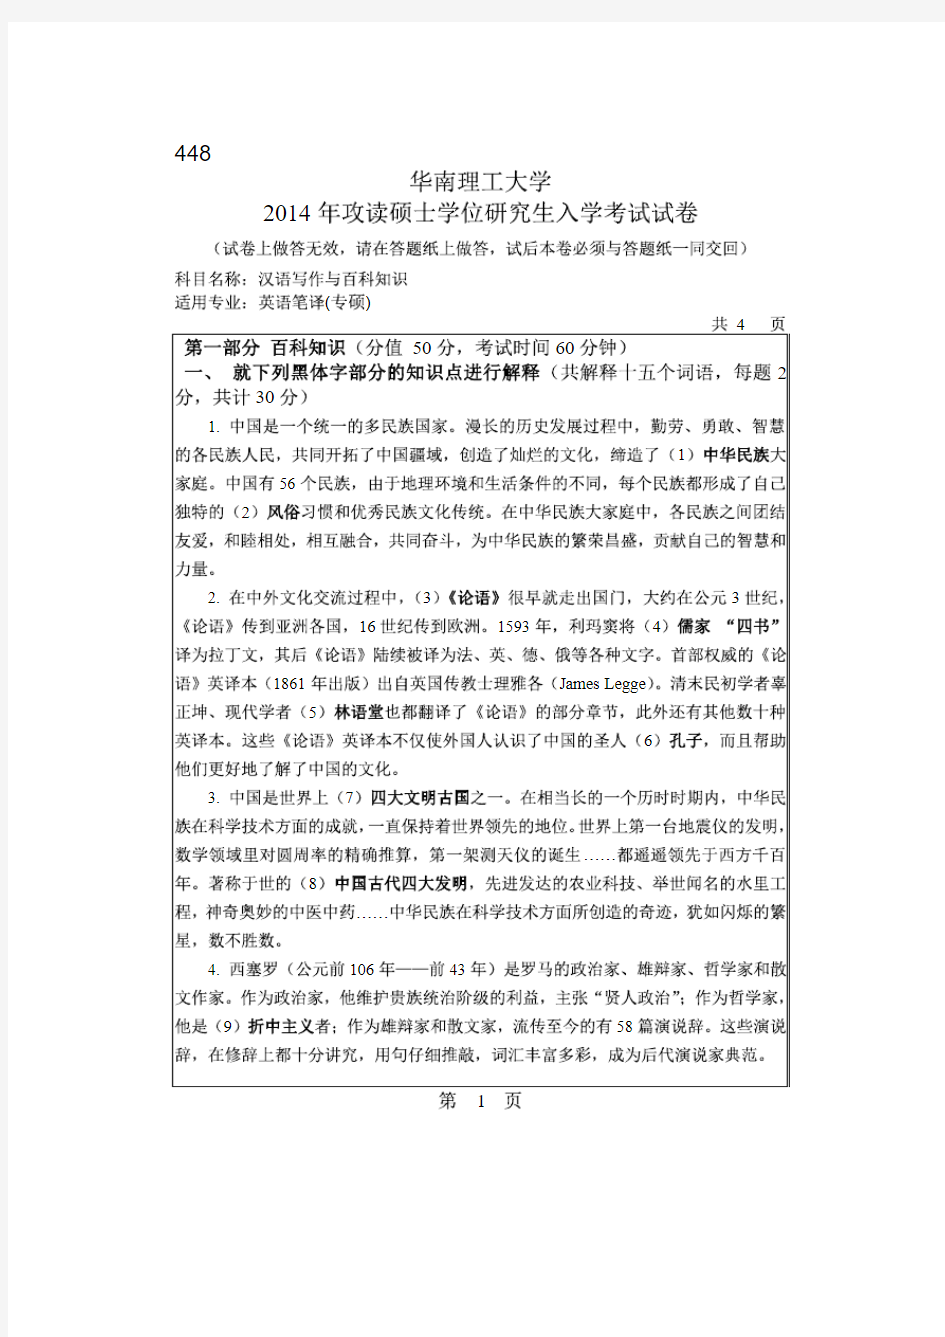 华南理工大学2014年《448汉语写作与百科知识》考研专业课真题试卷